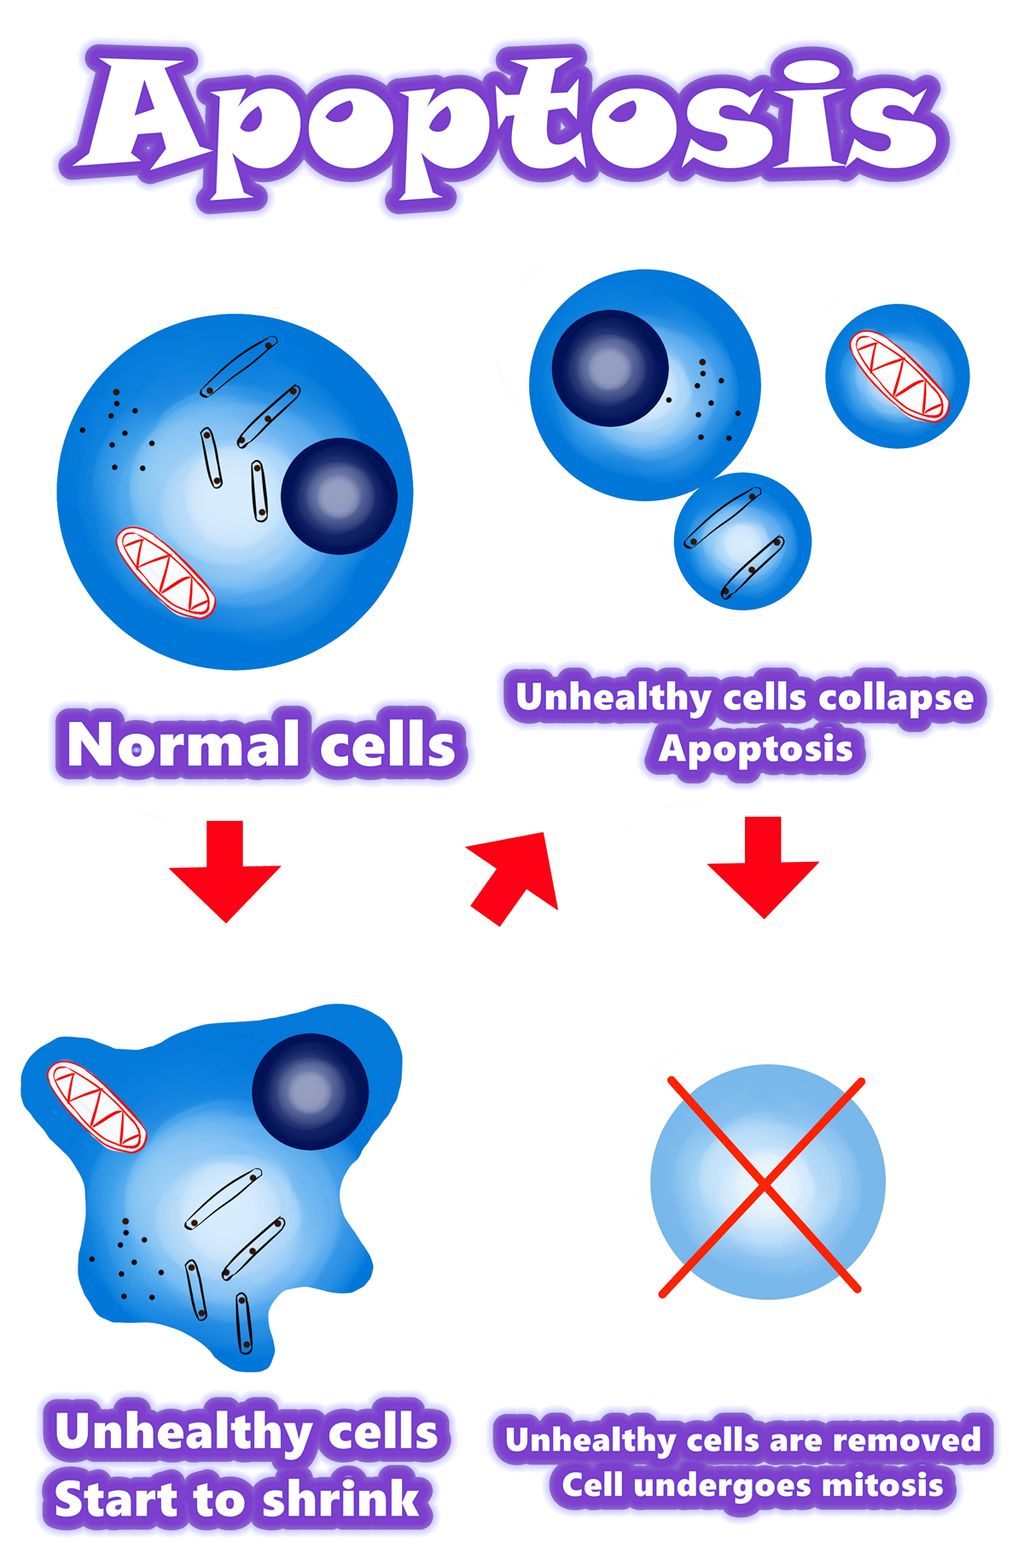 Solamargine | २०२१ मा क्यान्सर कोषहरूको लागि उत्तम समाधान एपोप्टोसिस बनाम क्यान्सर कोषहरू | Apoptosis बनाम असामान्य कोशिका | Apoptosis vs Mutant कोशिका | सिंहावलोकन / सारांश / Apoptosis को संयन्त्र